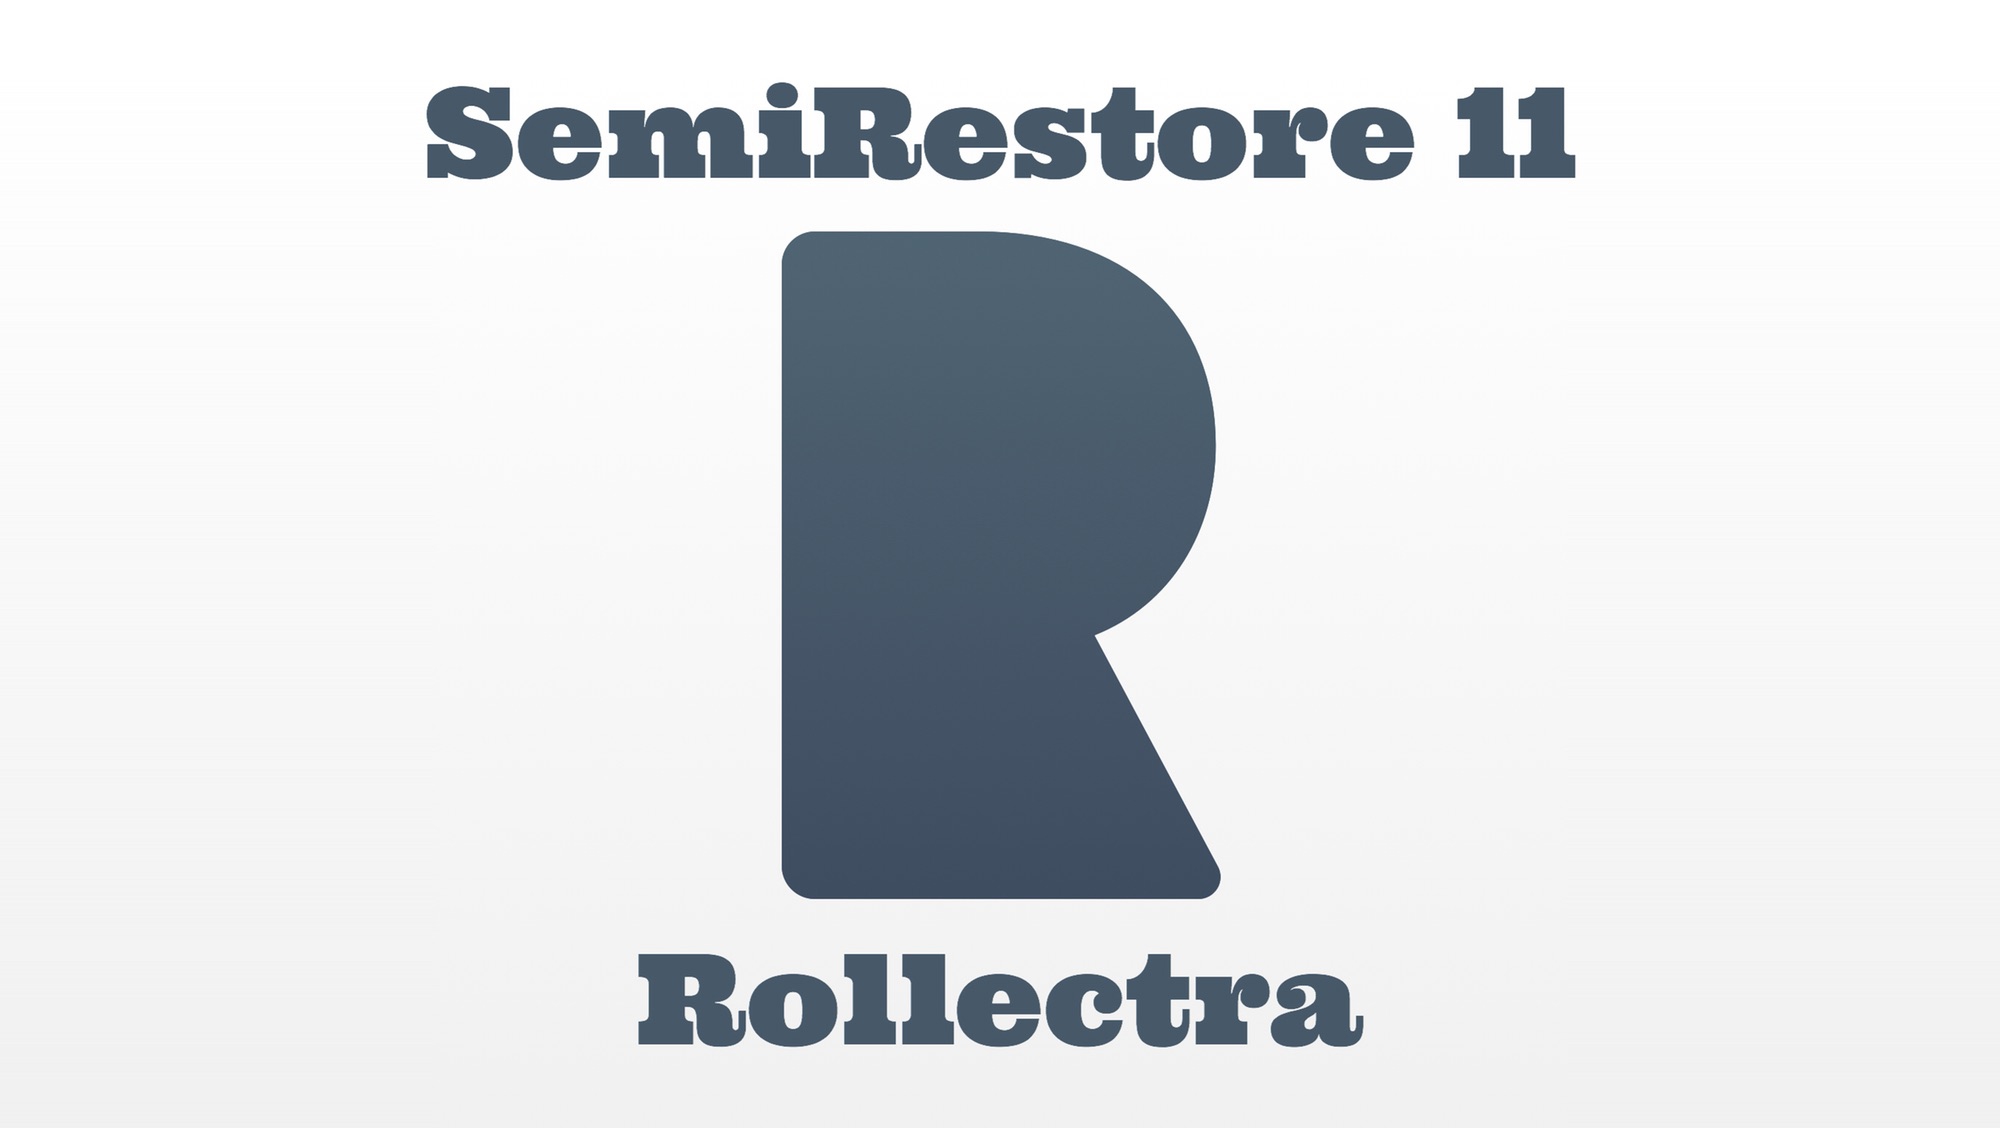 脱獄 Electra による脱獄を初期化する Semirestore 11 Rollectra マボイのメモ